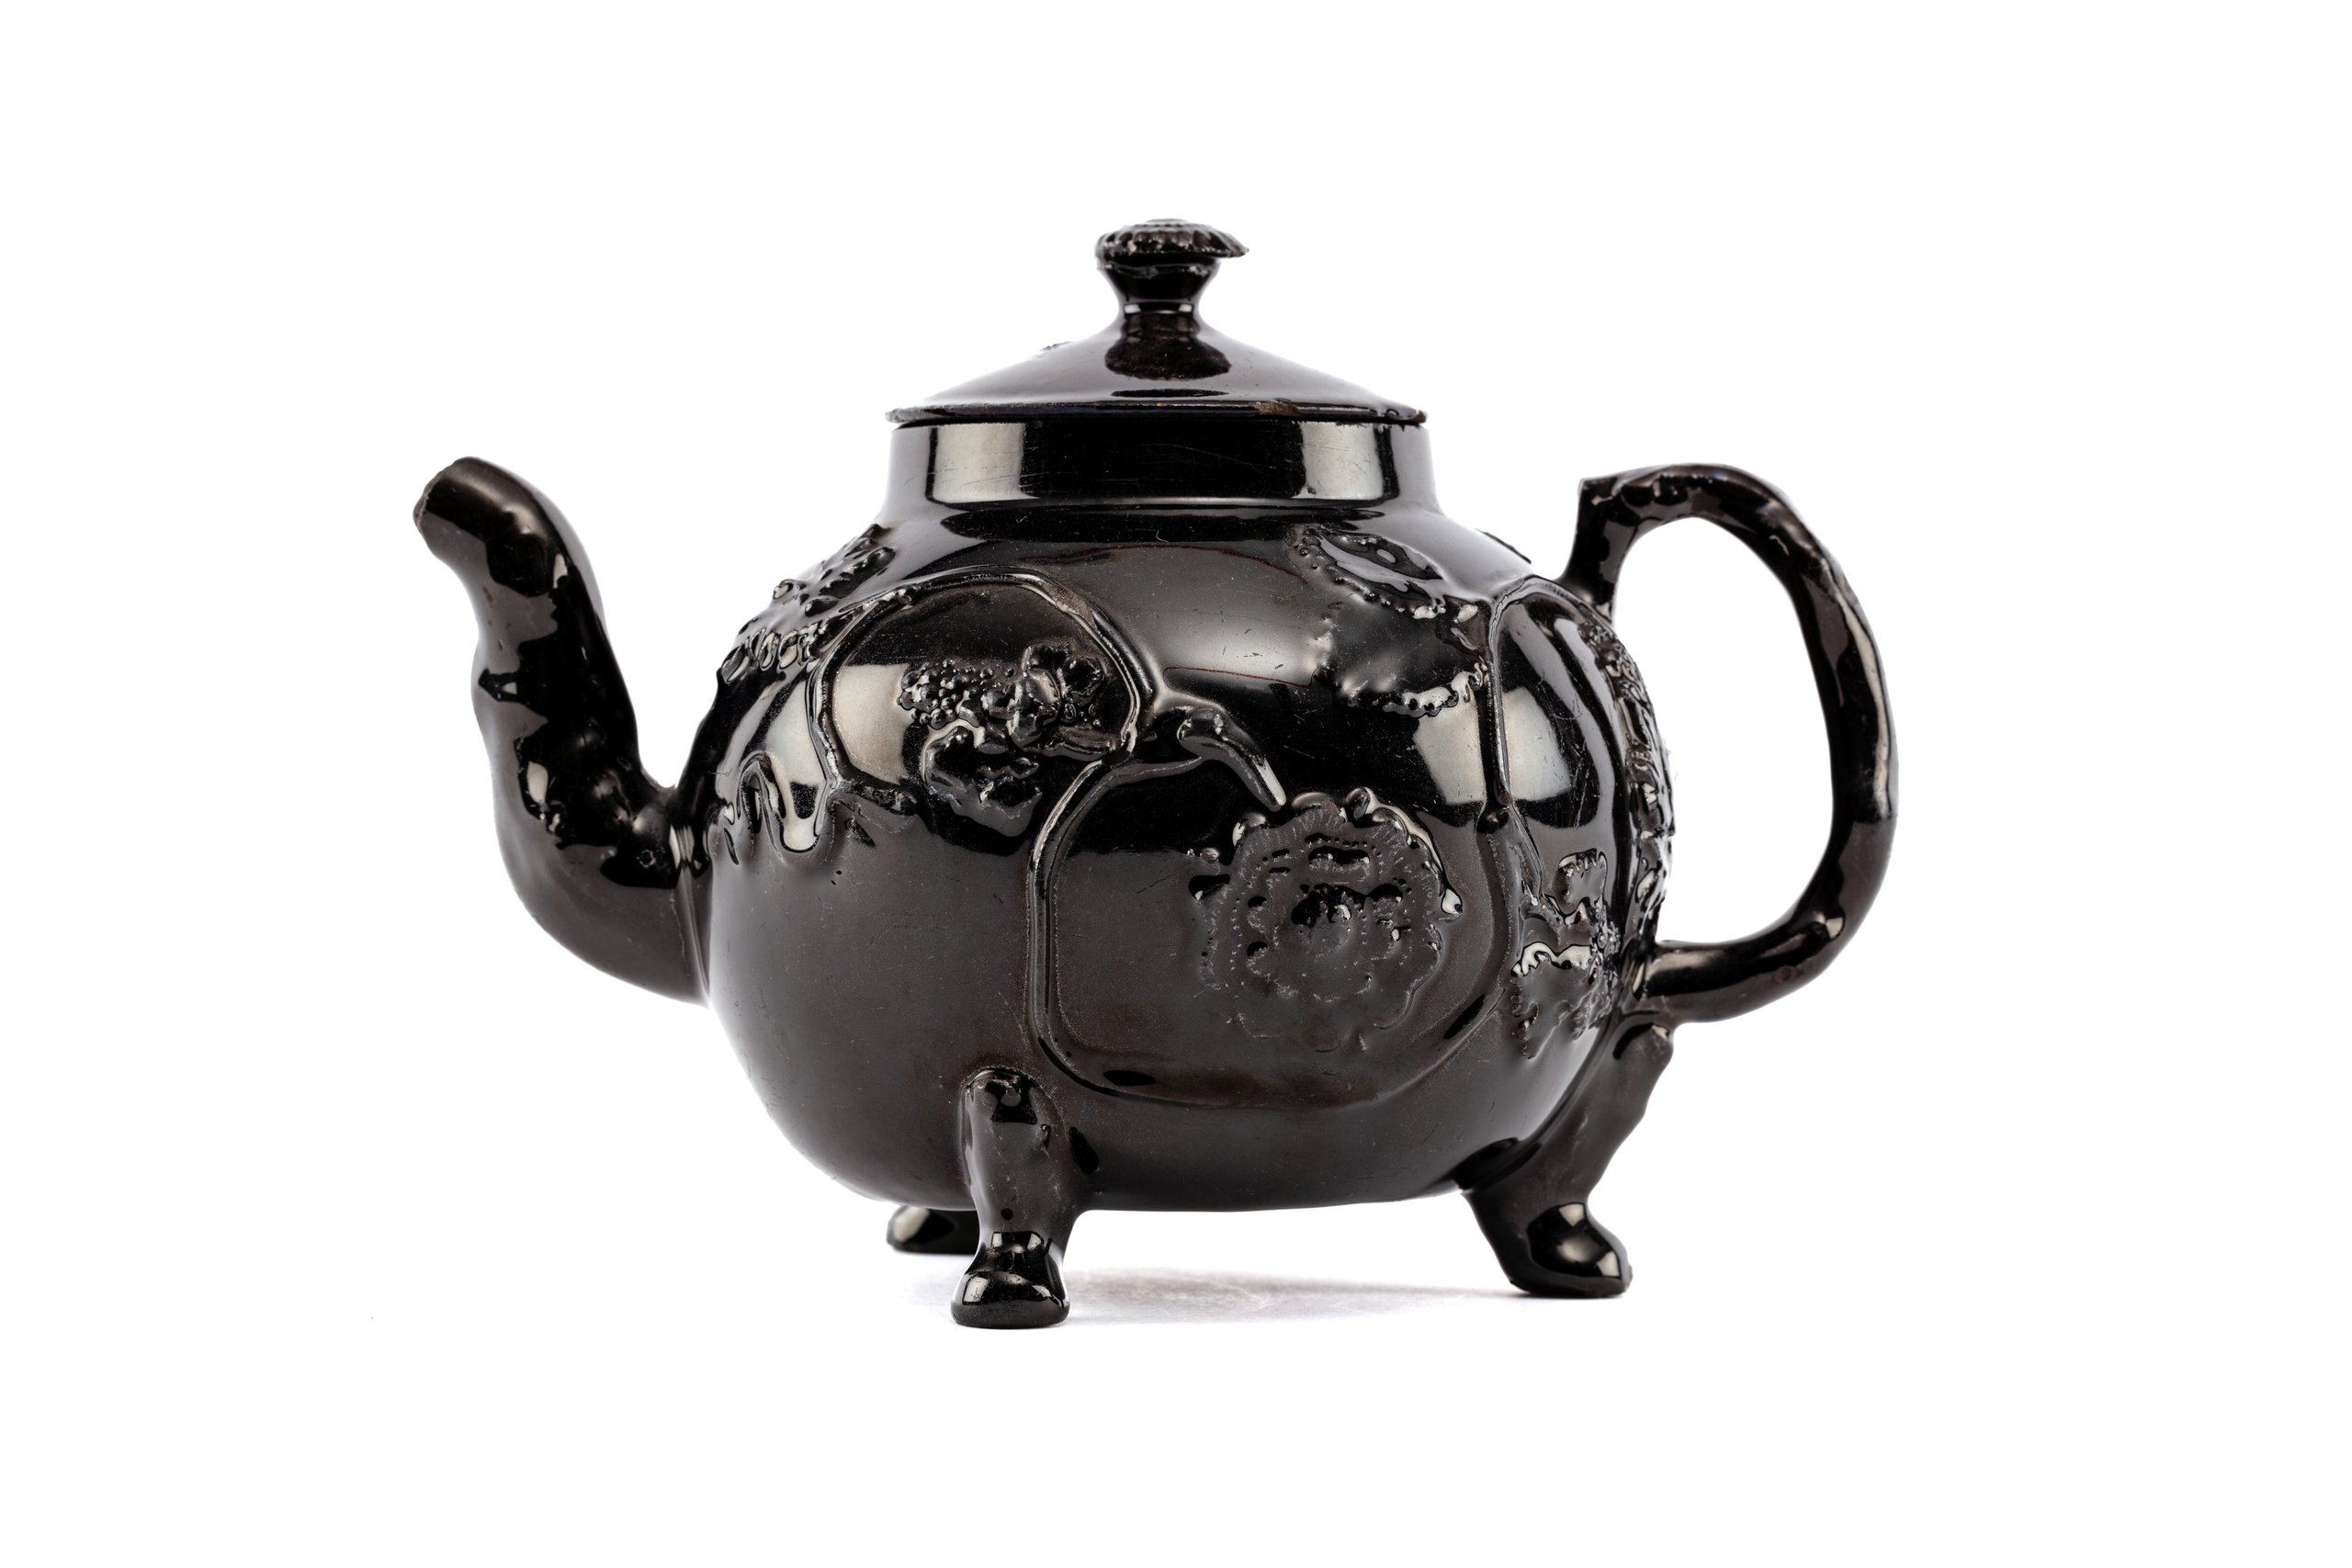 'Jackfield' earthenware teapot